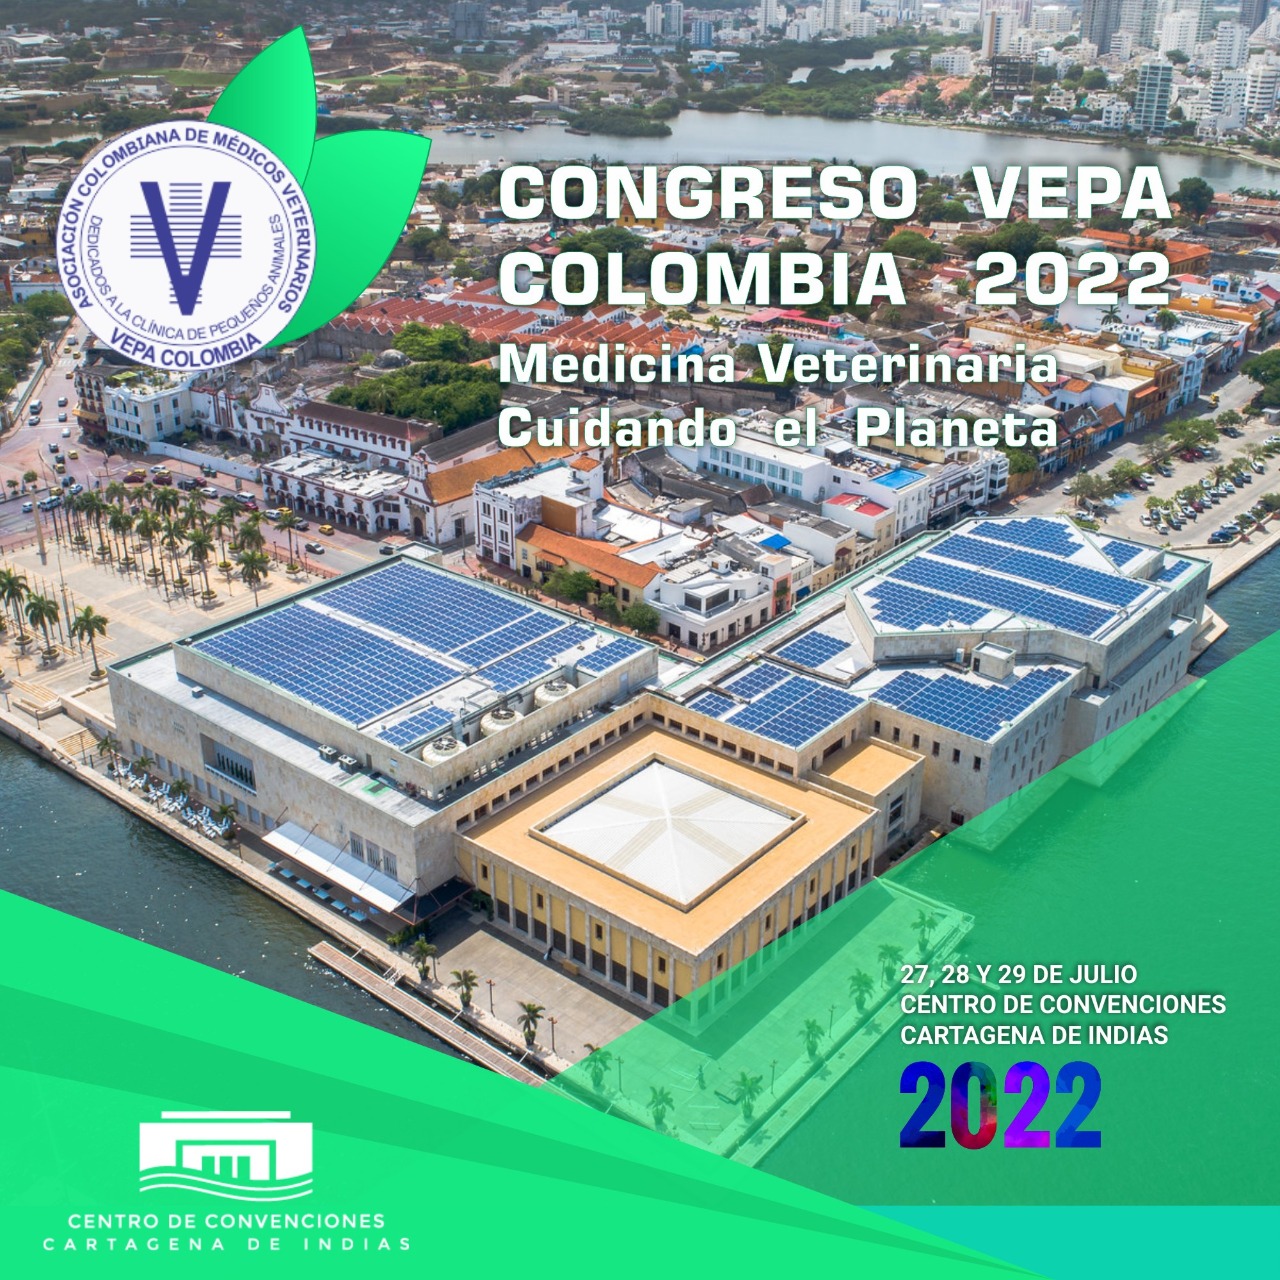  Conozca los ponentes del Congreso Vepa Colombia